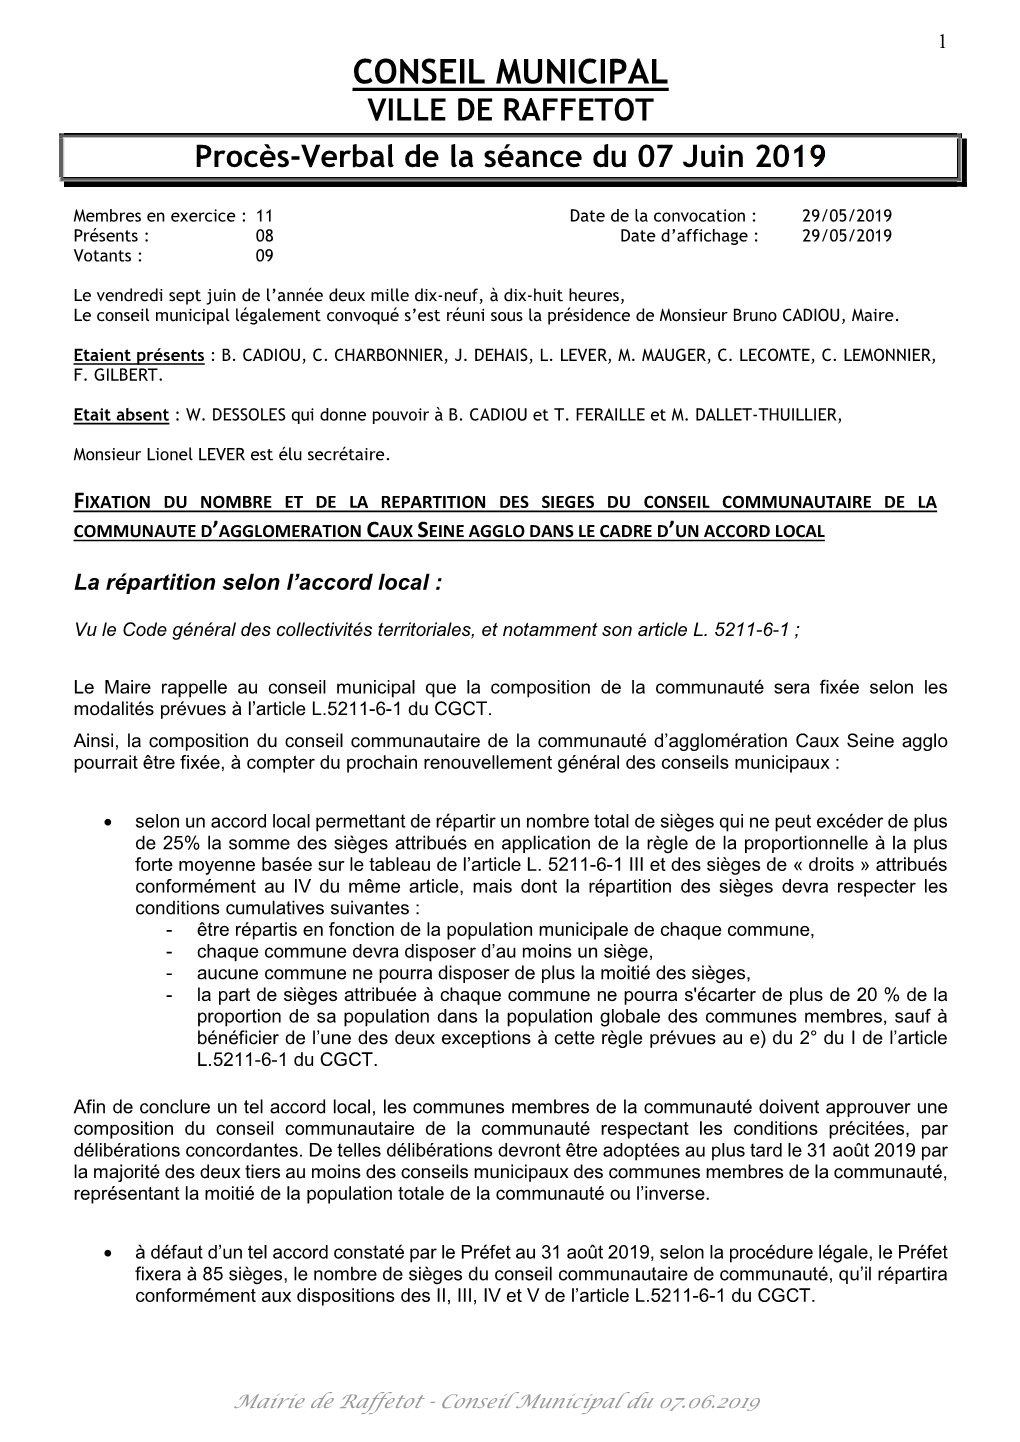 CONSEIL MUNICIPAL VILLE DE RAFFETOT Procès-Verbal De La Séance Du 07 Juin 2019